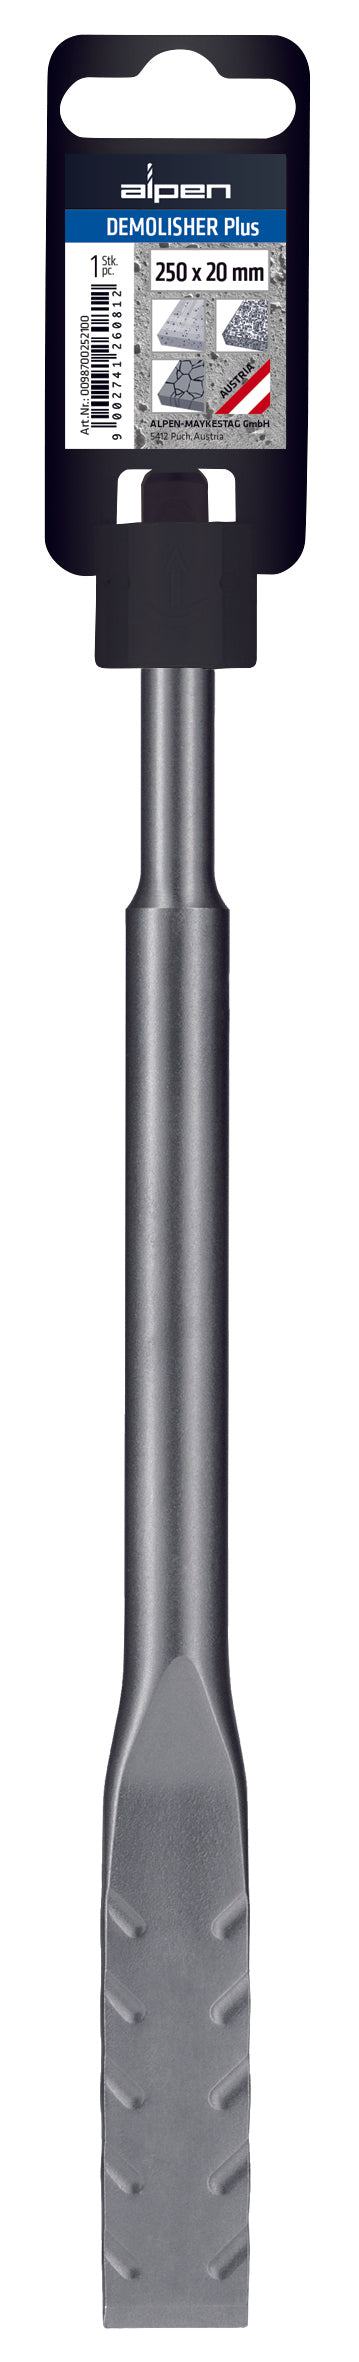 Alpen DEMOLISHER SDS-Plus Chisel Point x 250mm Long